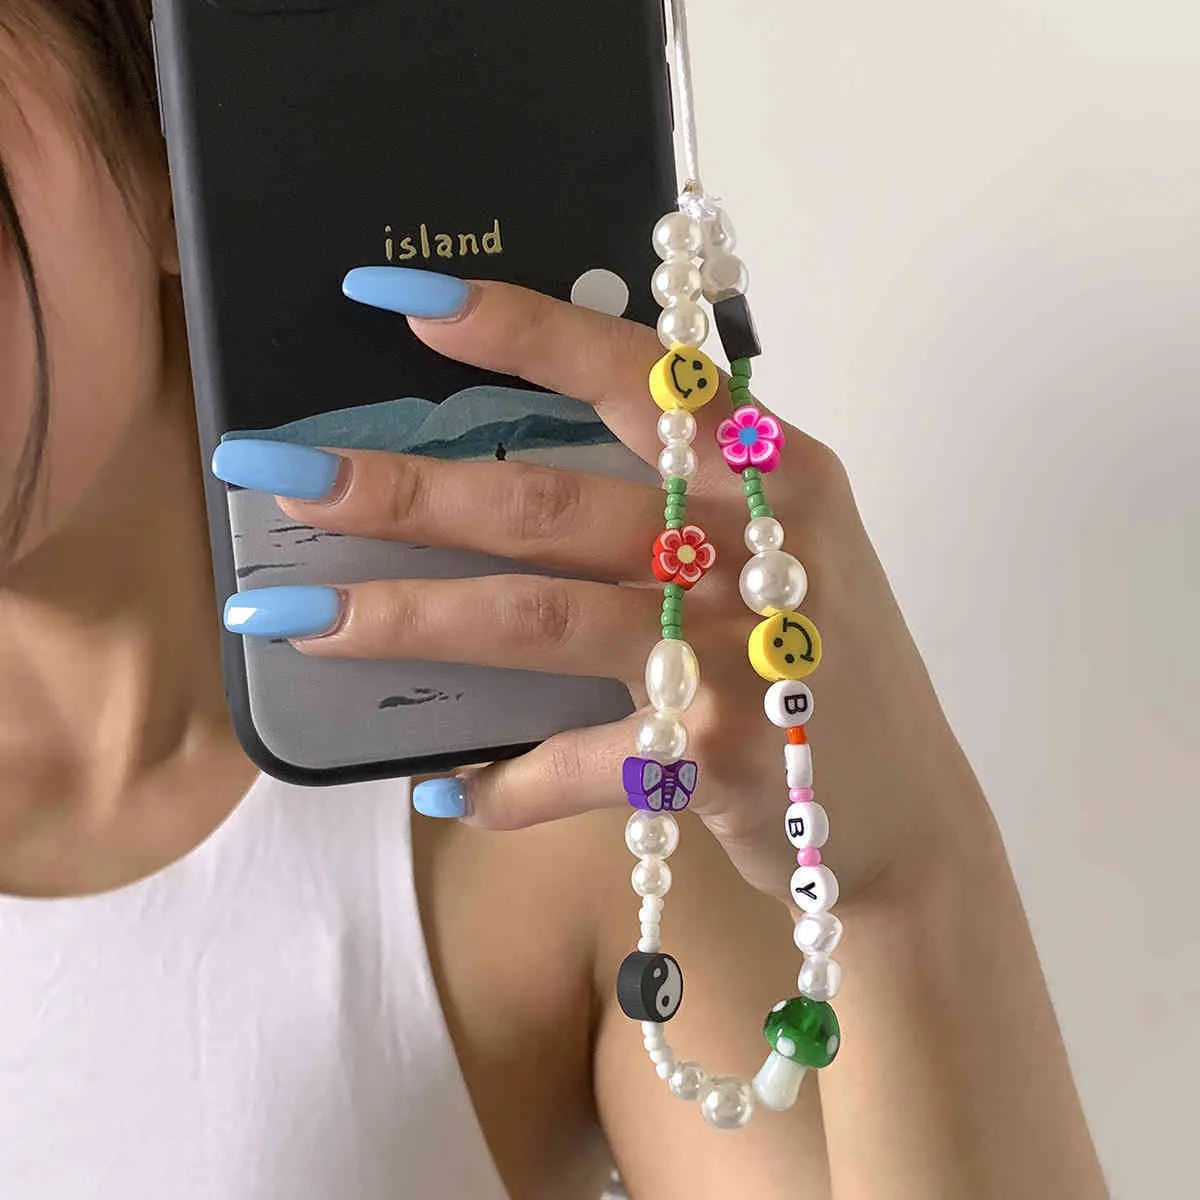 أحزمة الهاتف المحمول وسلسلة المجوهرات بالخرز للهاتف الخلوي البوهيمي البسيط.